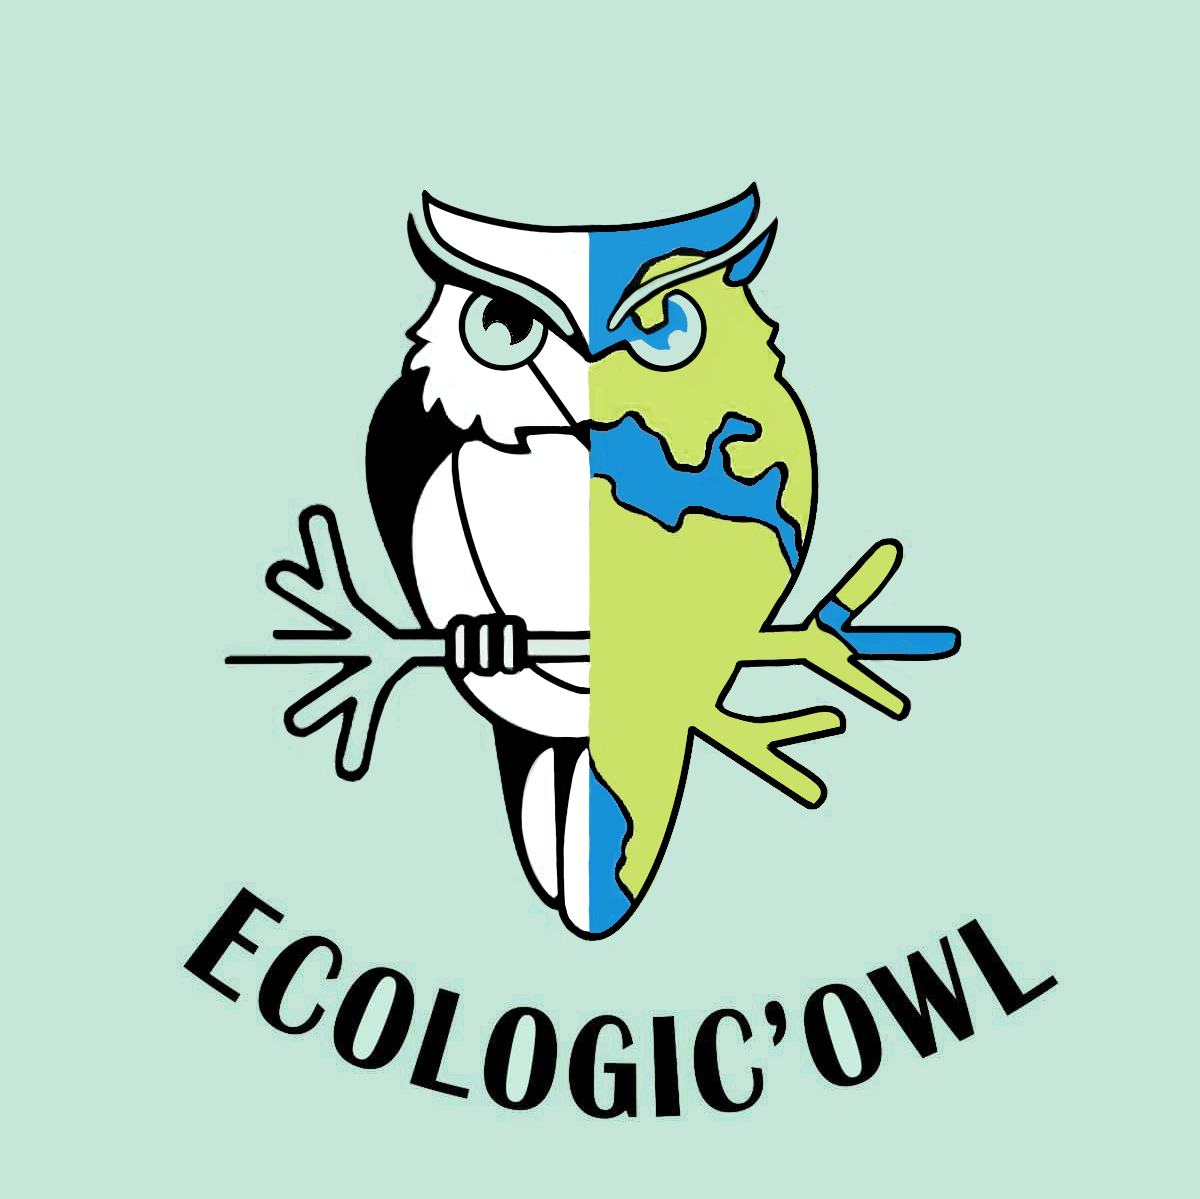 Ecologic’owl